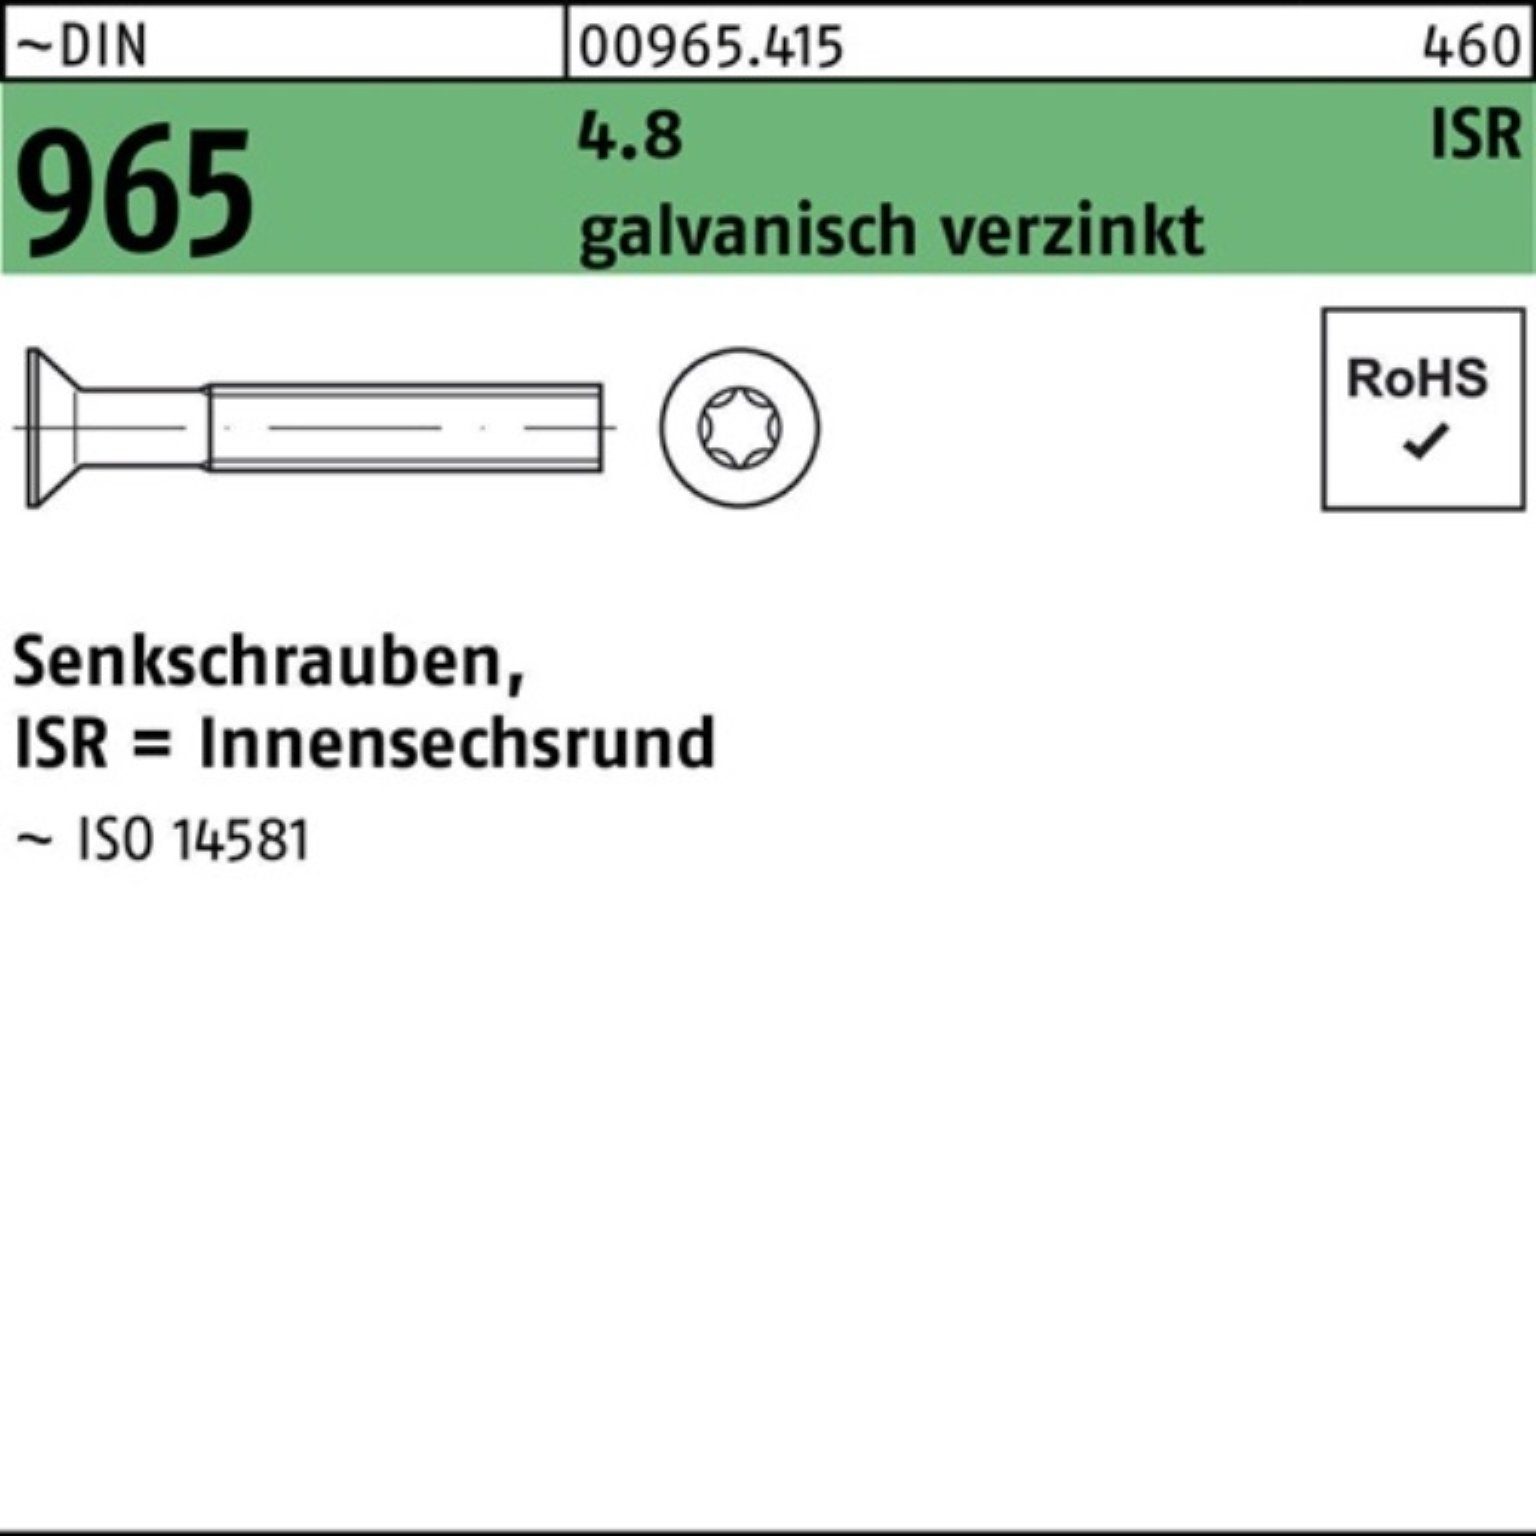 Reyher Senkschraube 1000er Pack Senkschraube M4x30-T20 4.8 DIN ISR 1000St. 965 galv.verz